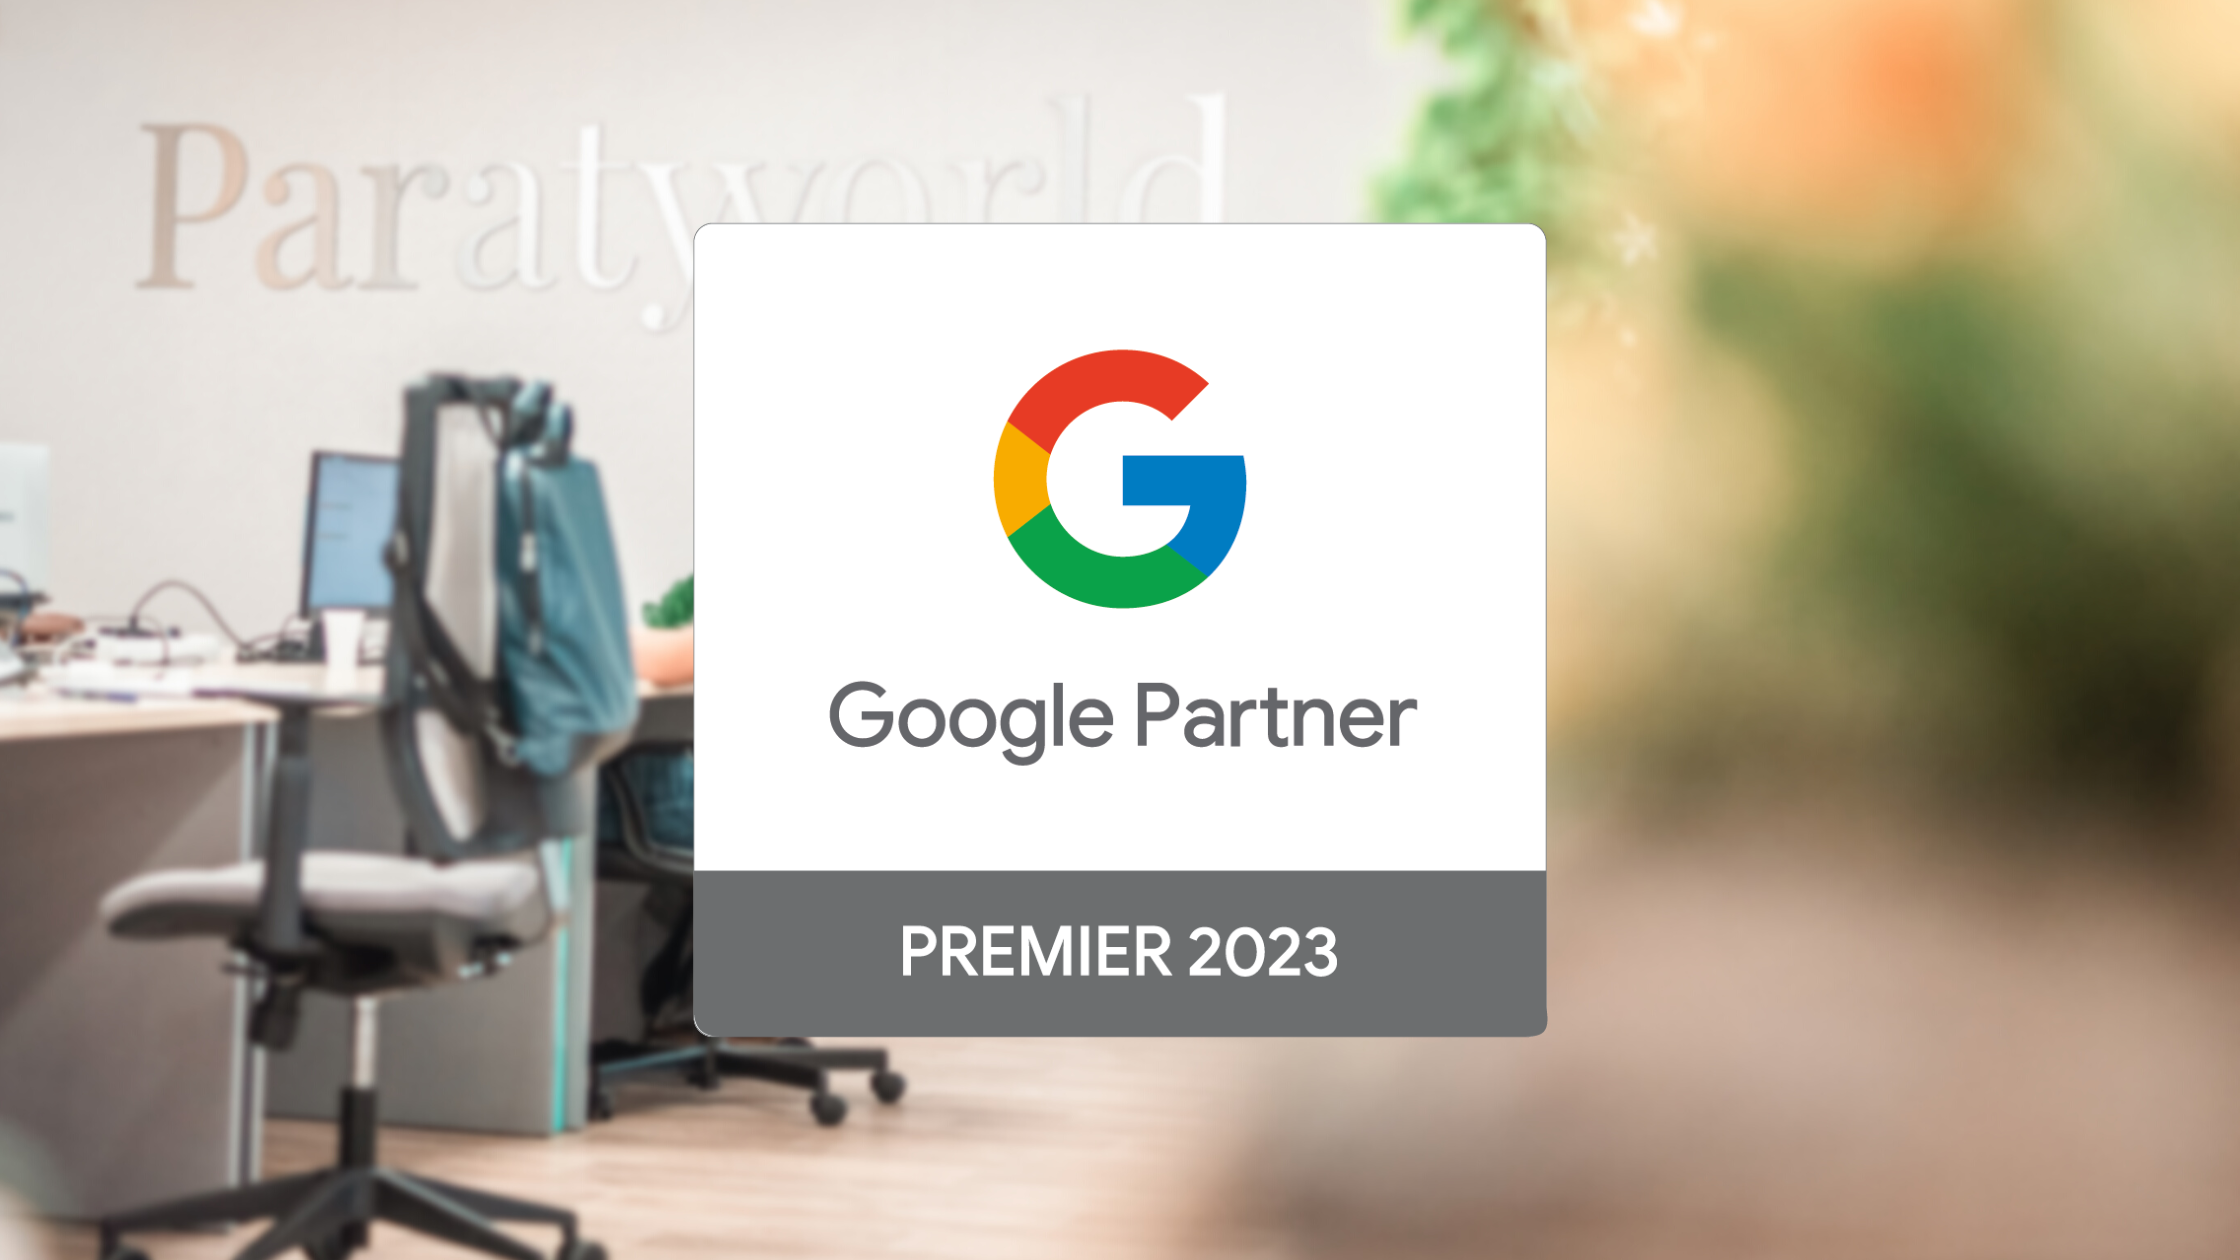 Paraty Tech obtiene el reconocimiento de Google Partner Premier 2023